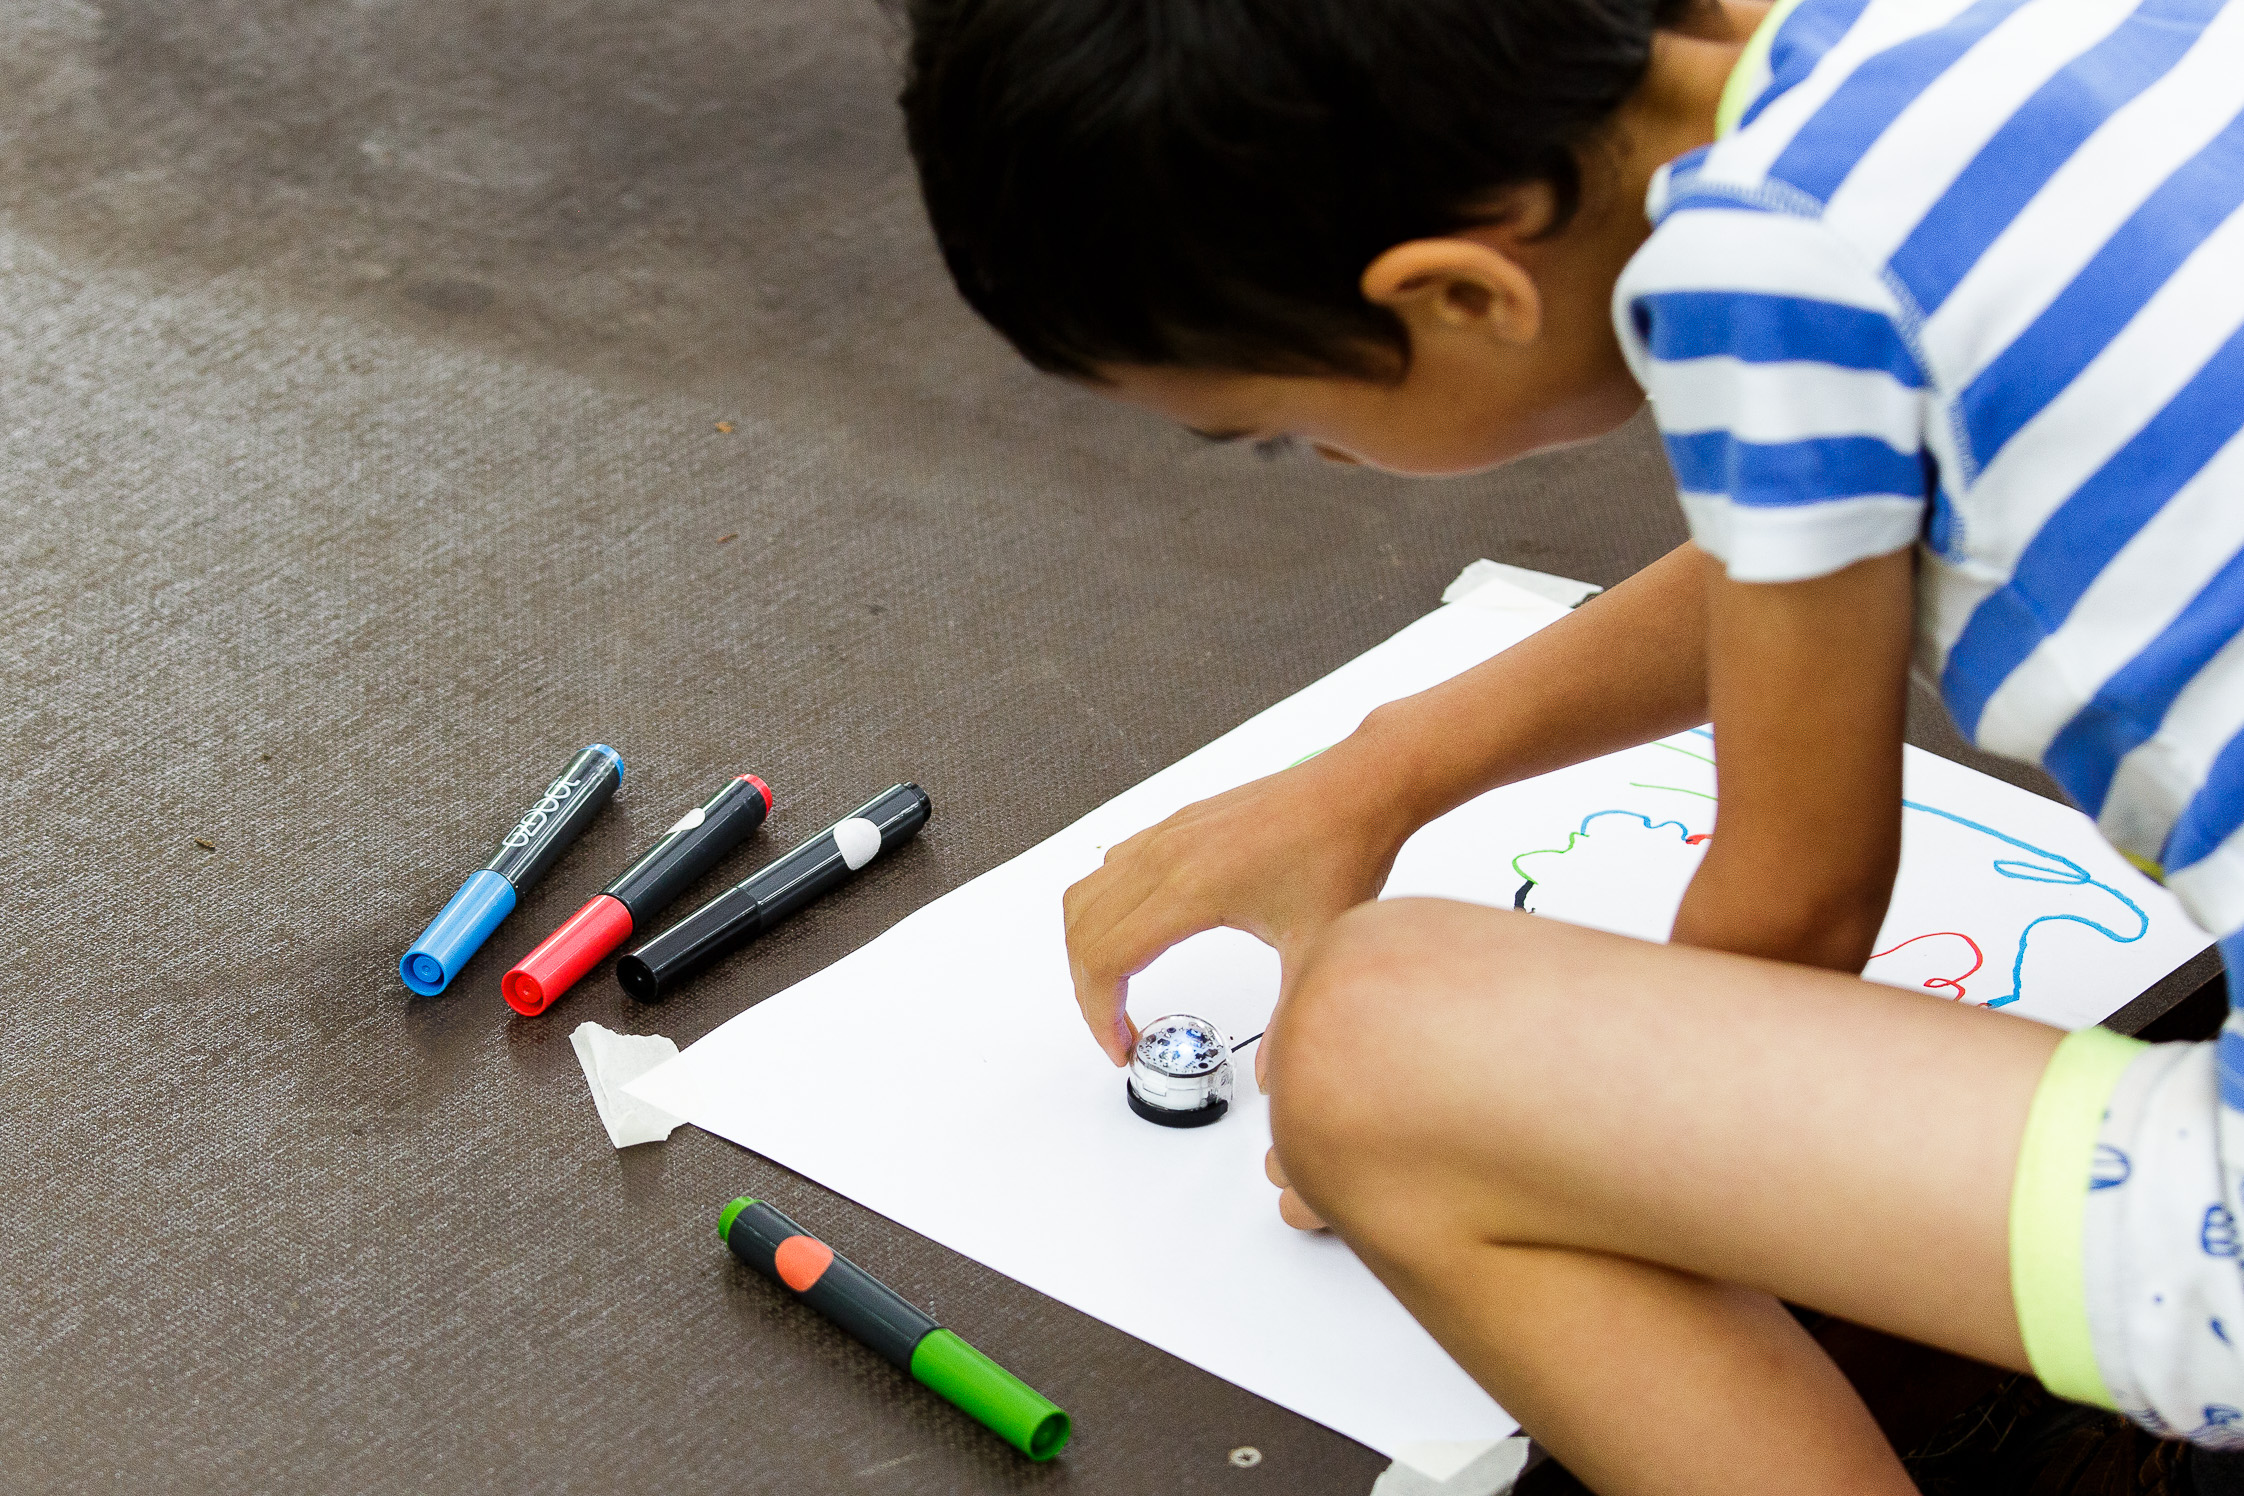 Ein kleiner Junge lässt einen Miniroboter auf einer Linie entlang fahren, die er vorher auf ein Stück Papier gezeichnet hat.